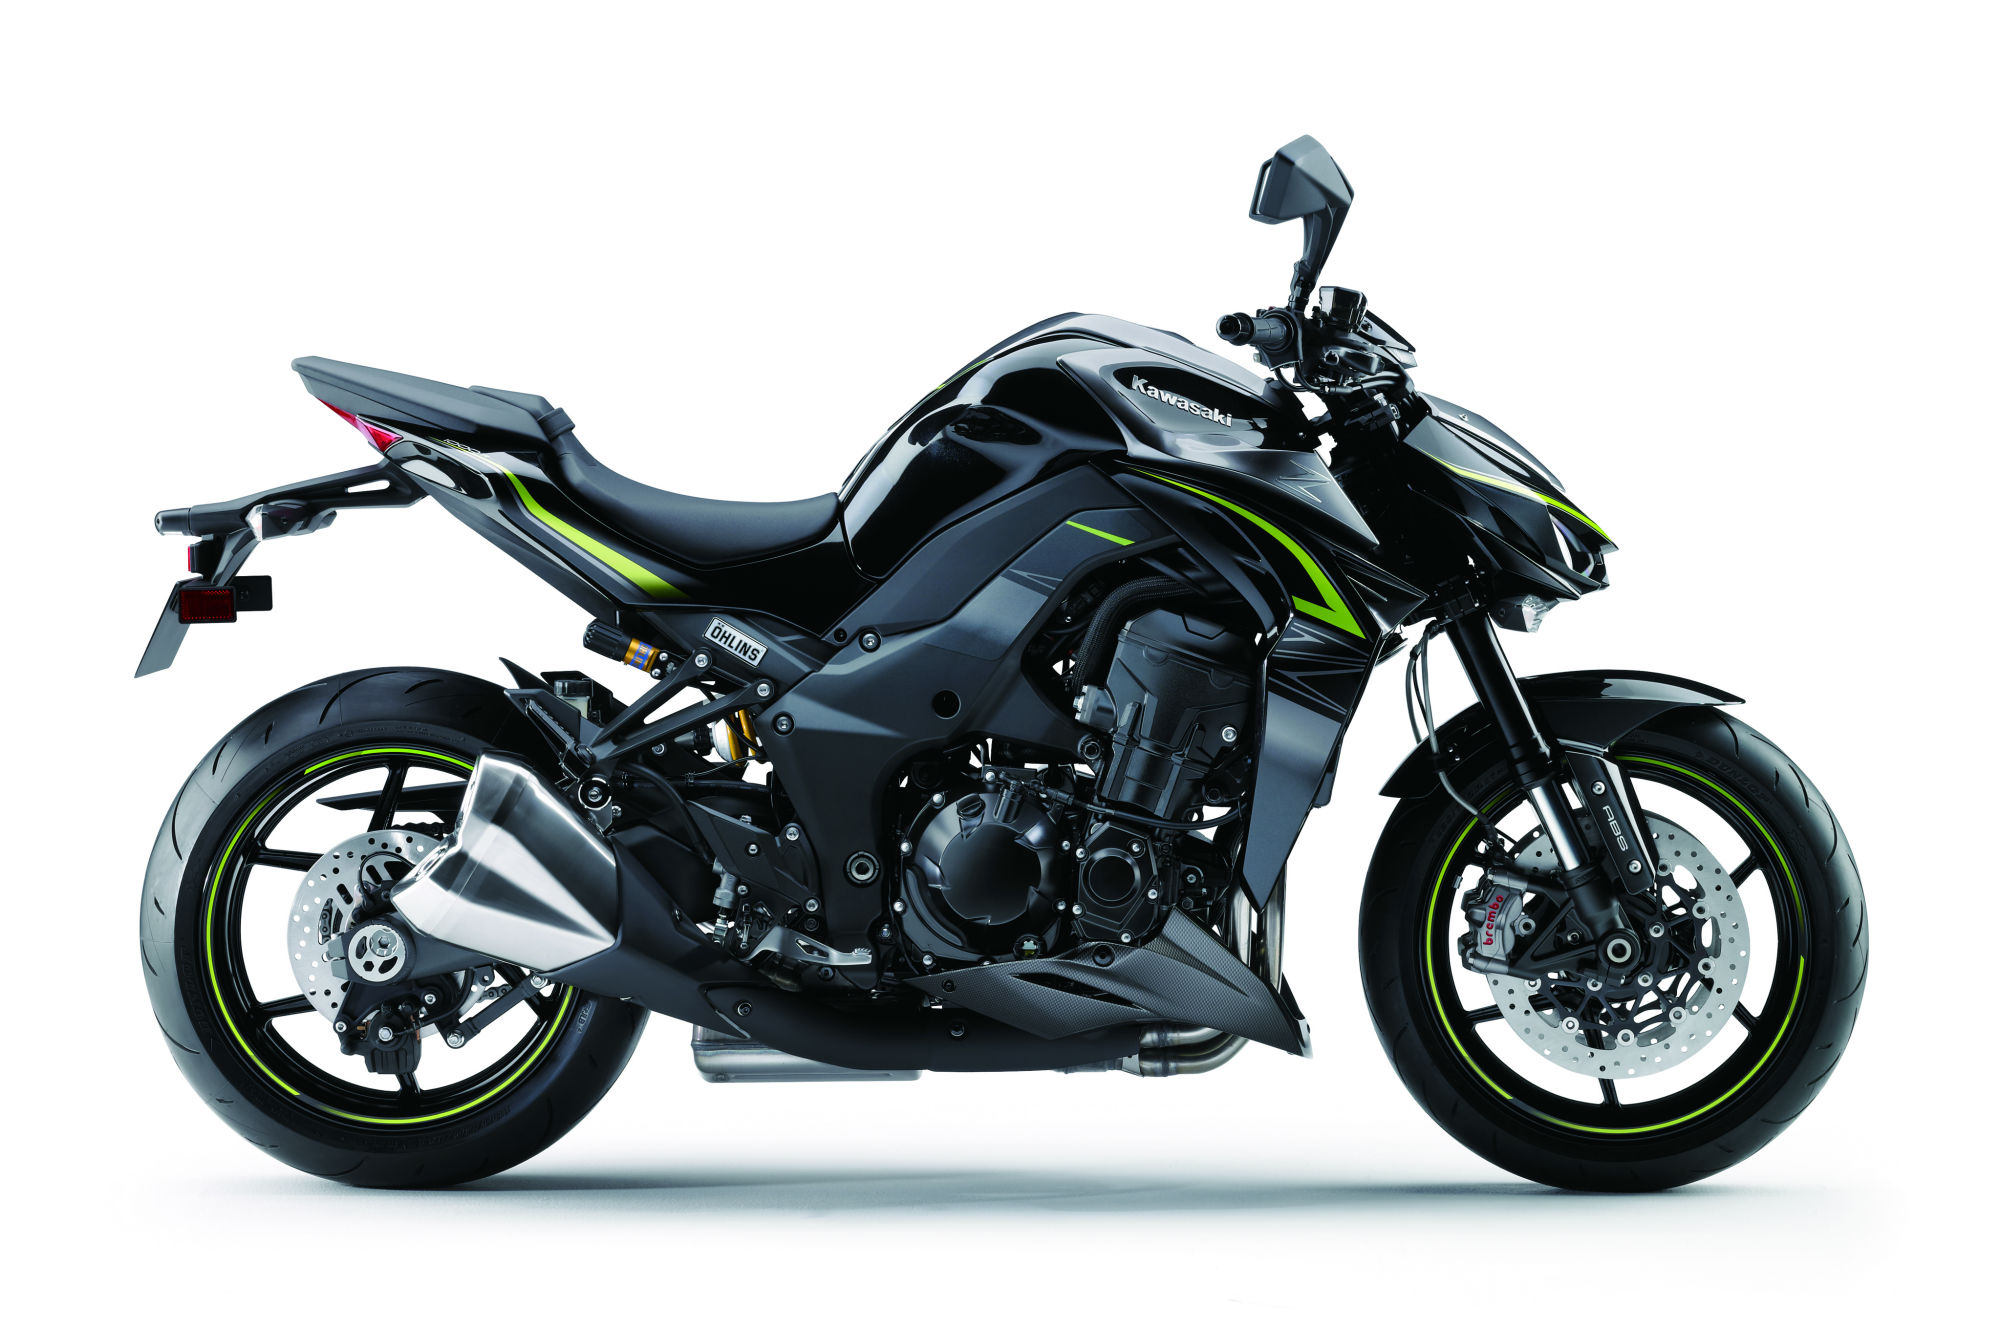 New Kawasaki Z1000 R revealed